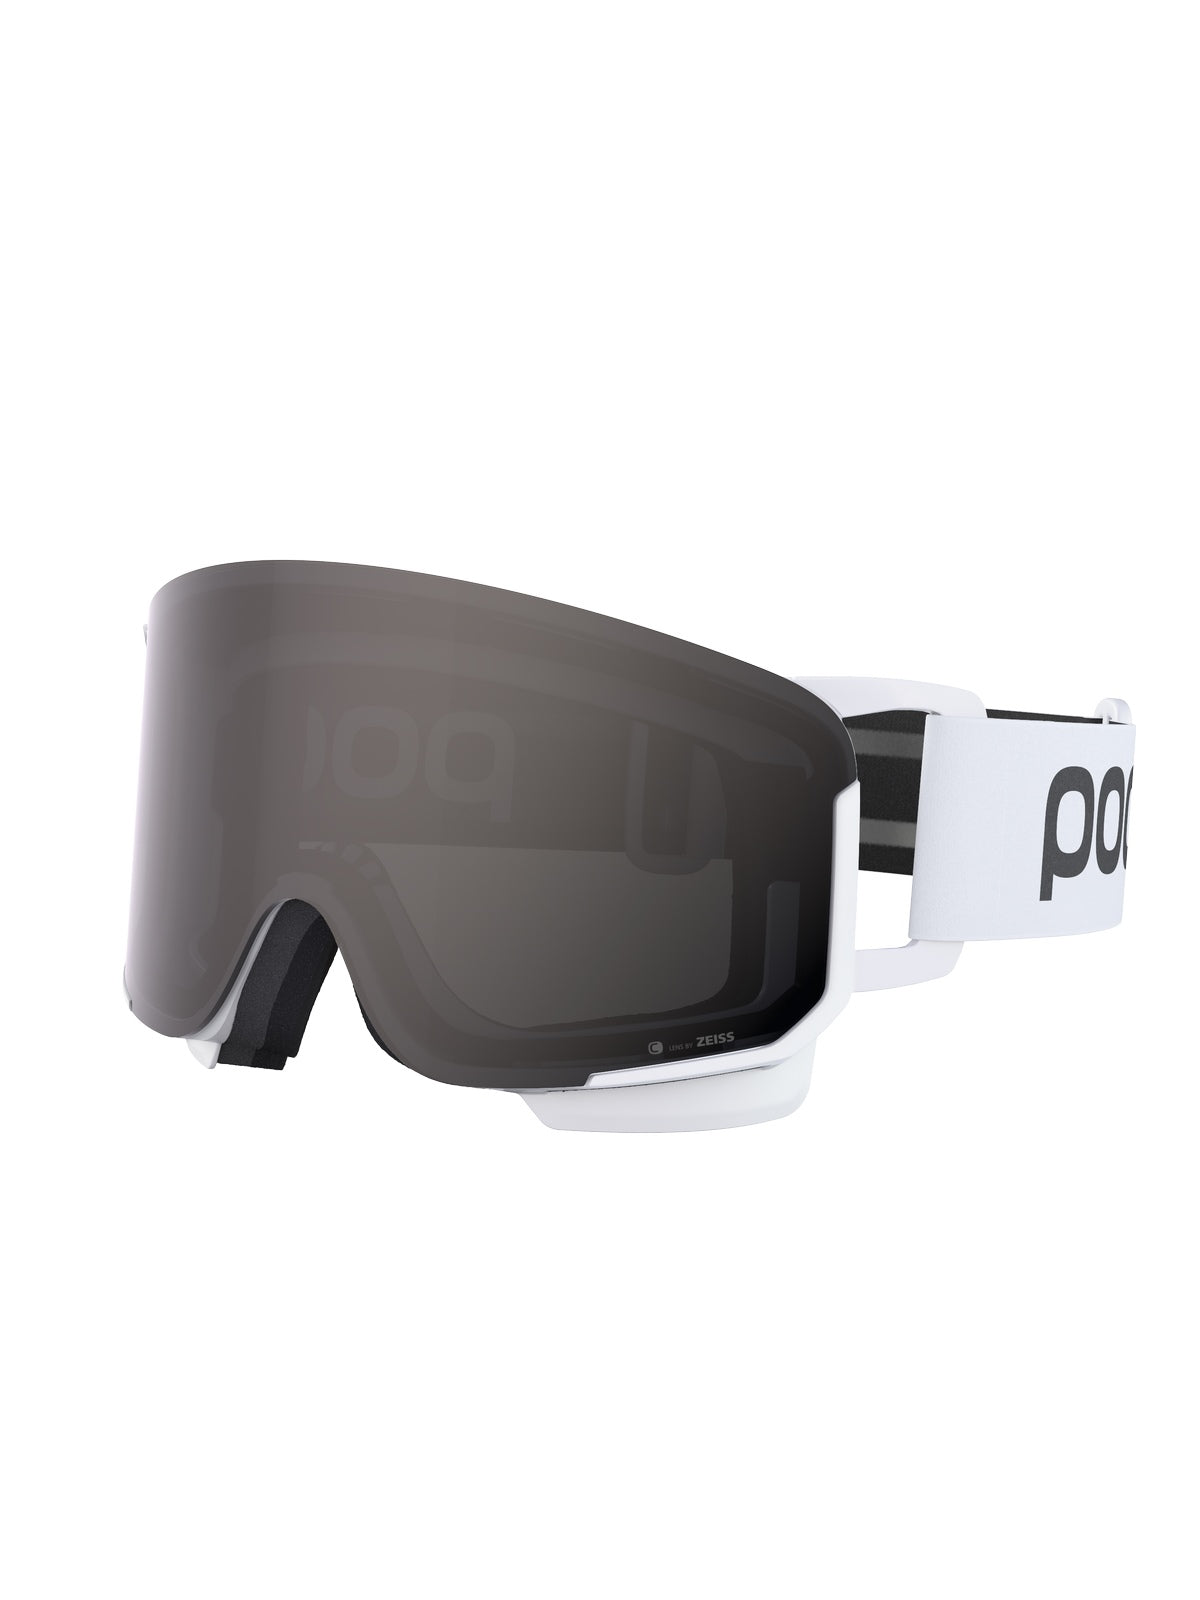 Gogle narciarskie POC Nexal Clarity - Hyd. White/Clarity Define/No Mirror Cat 2